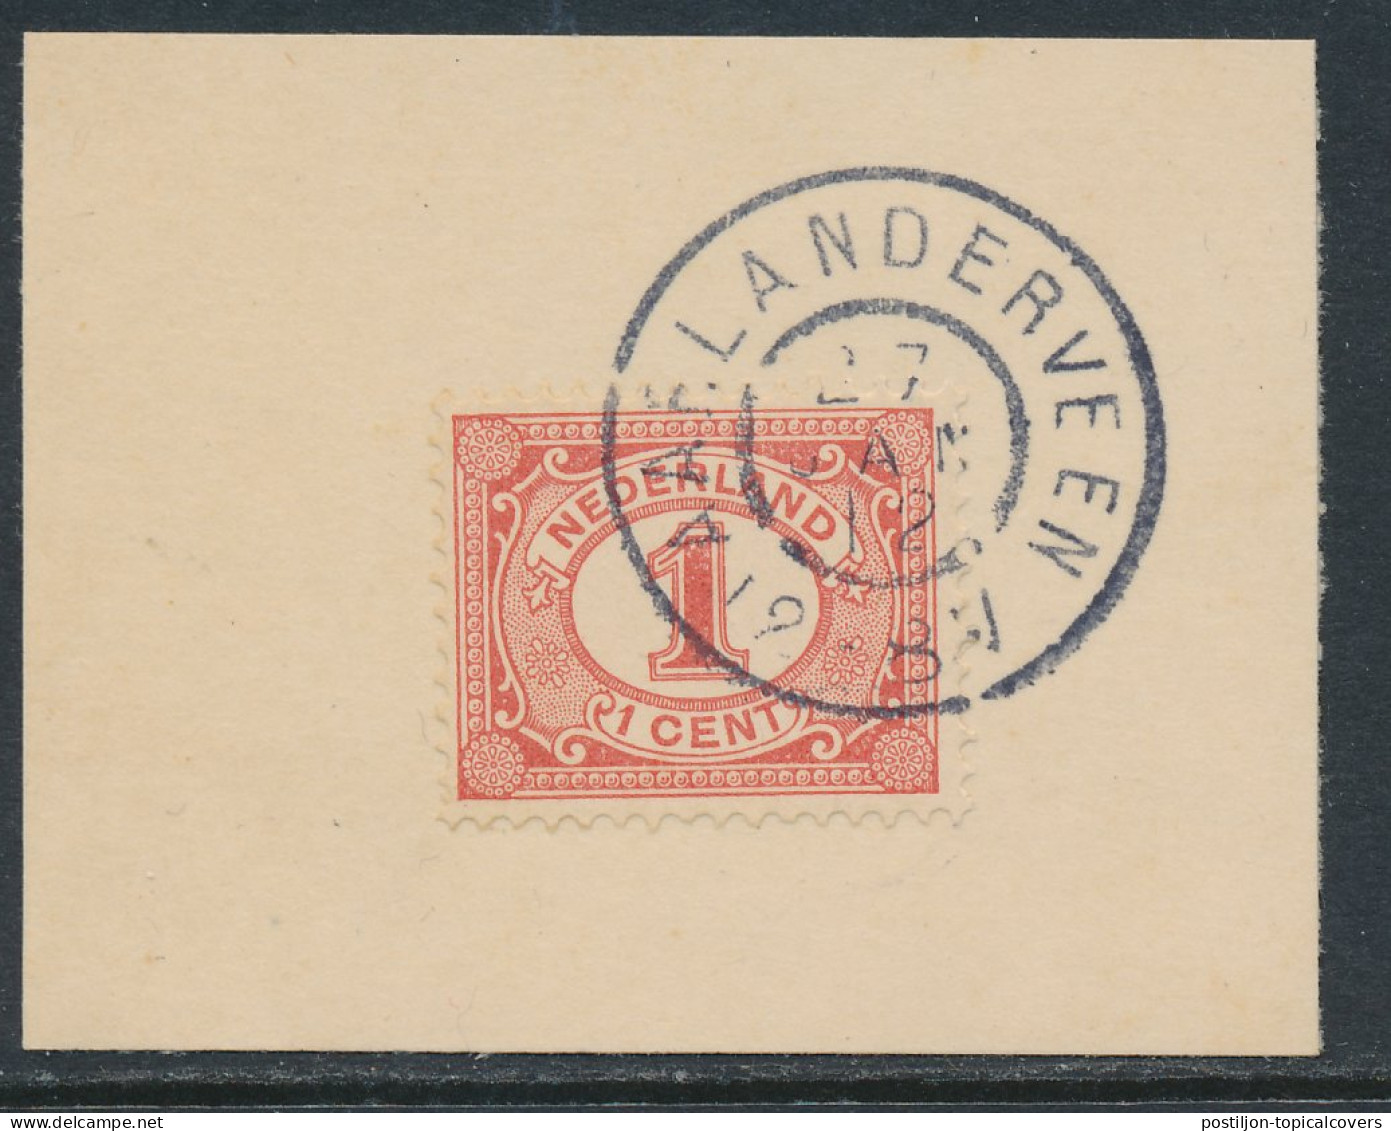 Grootrondstempel Aarlanderveen 1912 - Poststempel